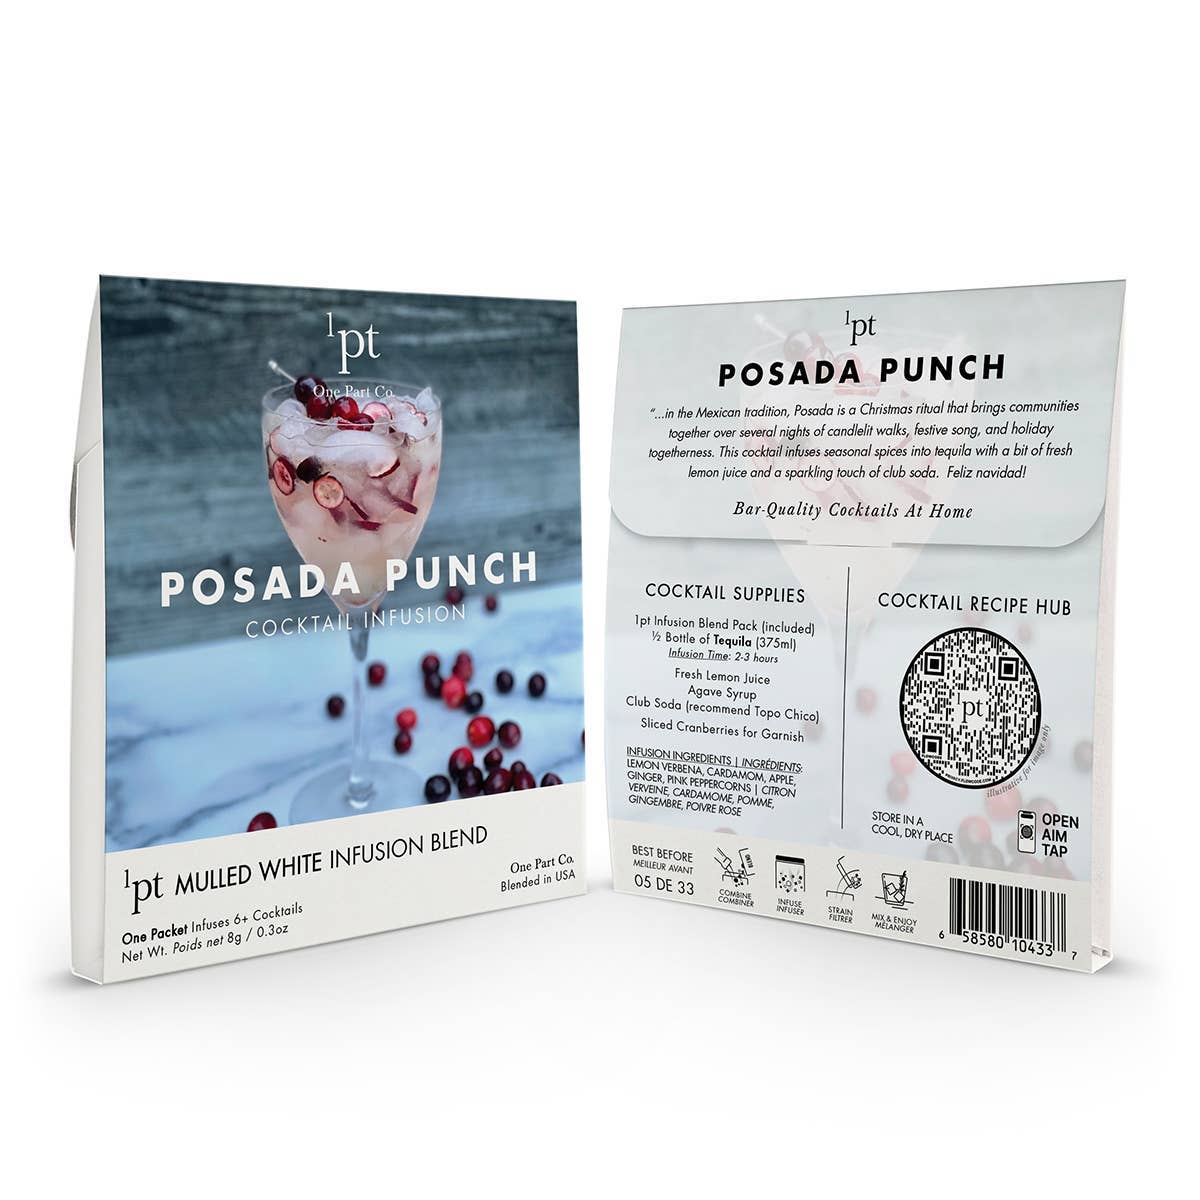 1pt Posada Punch Cocktail Pack